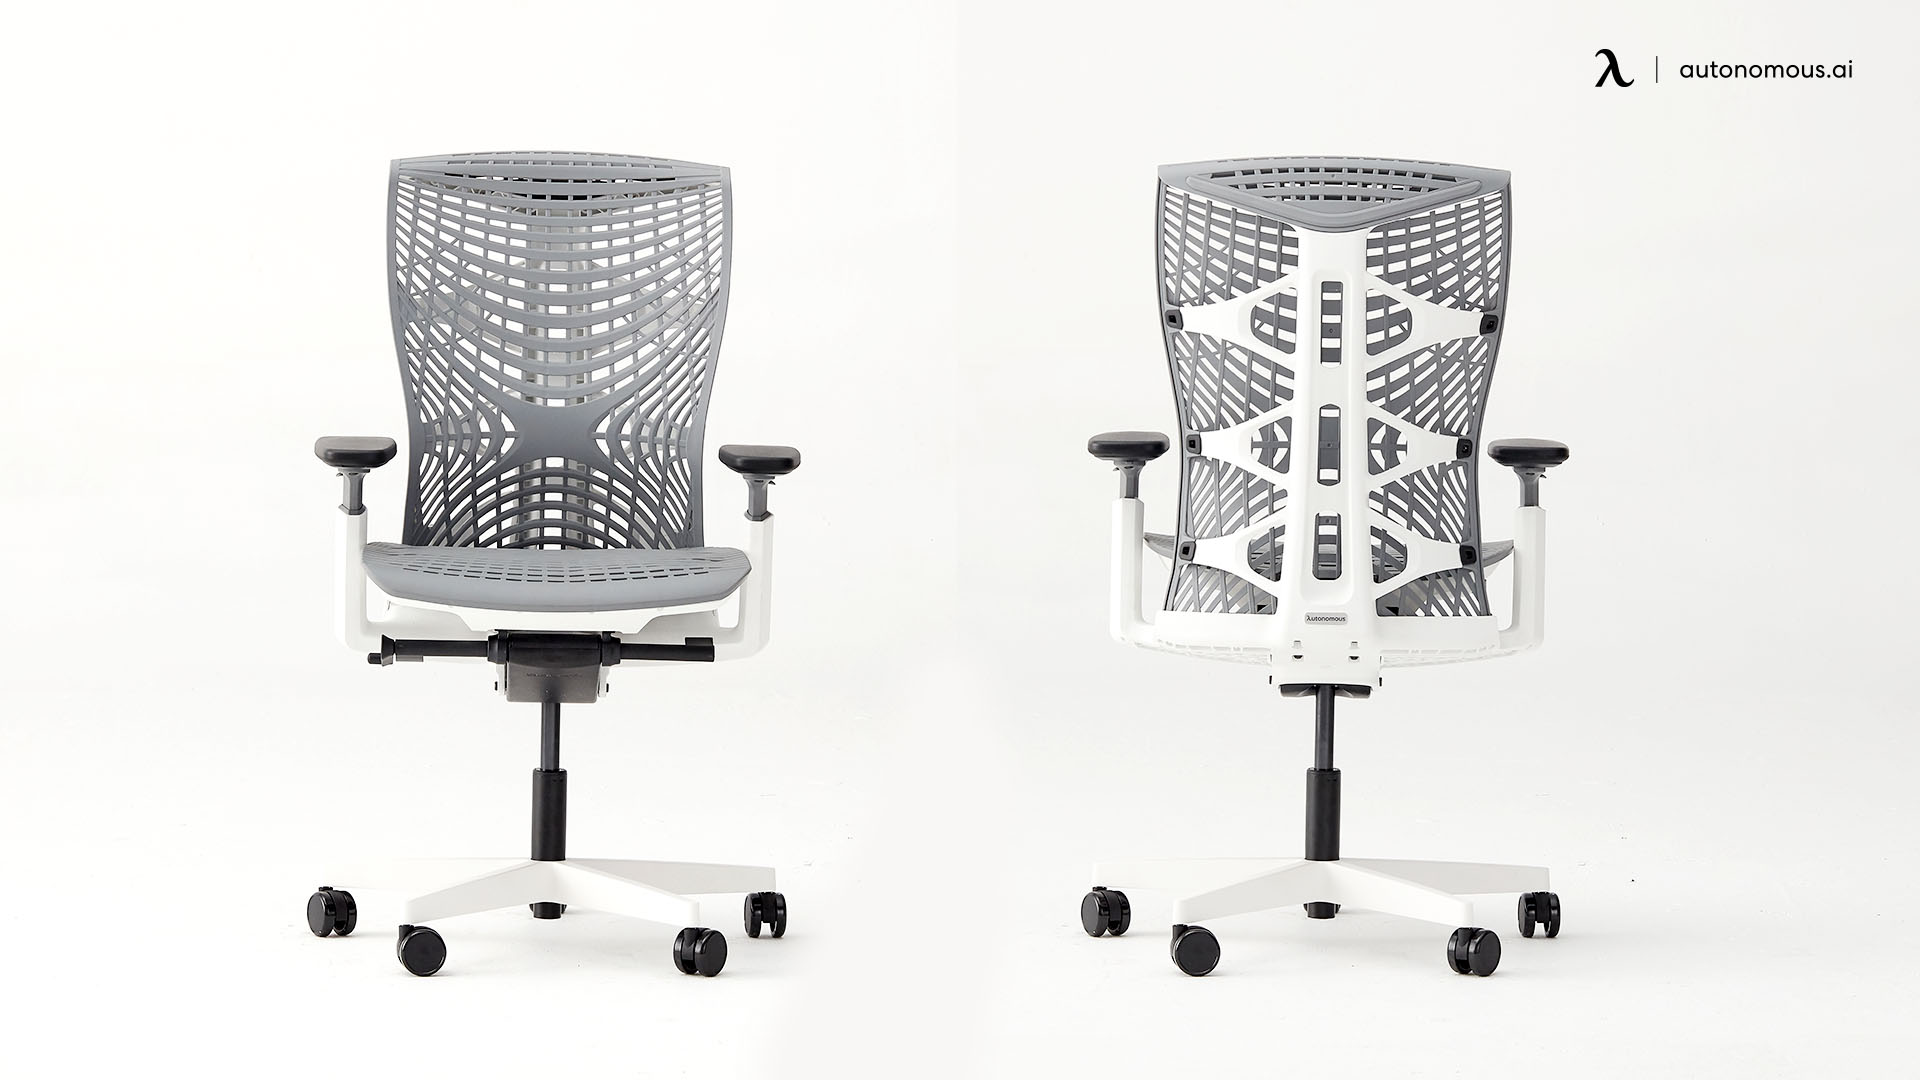 The ErgoChair Pro+ light gray office chair